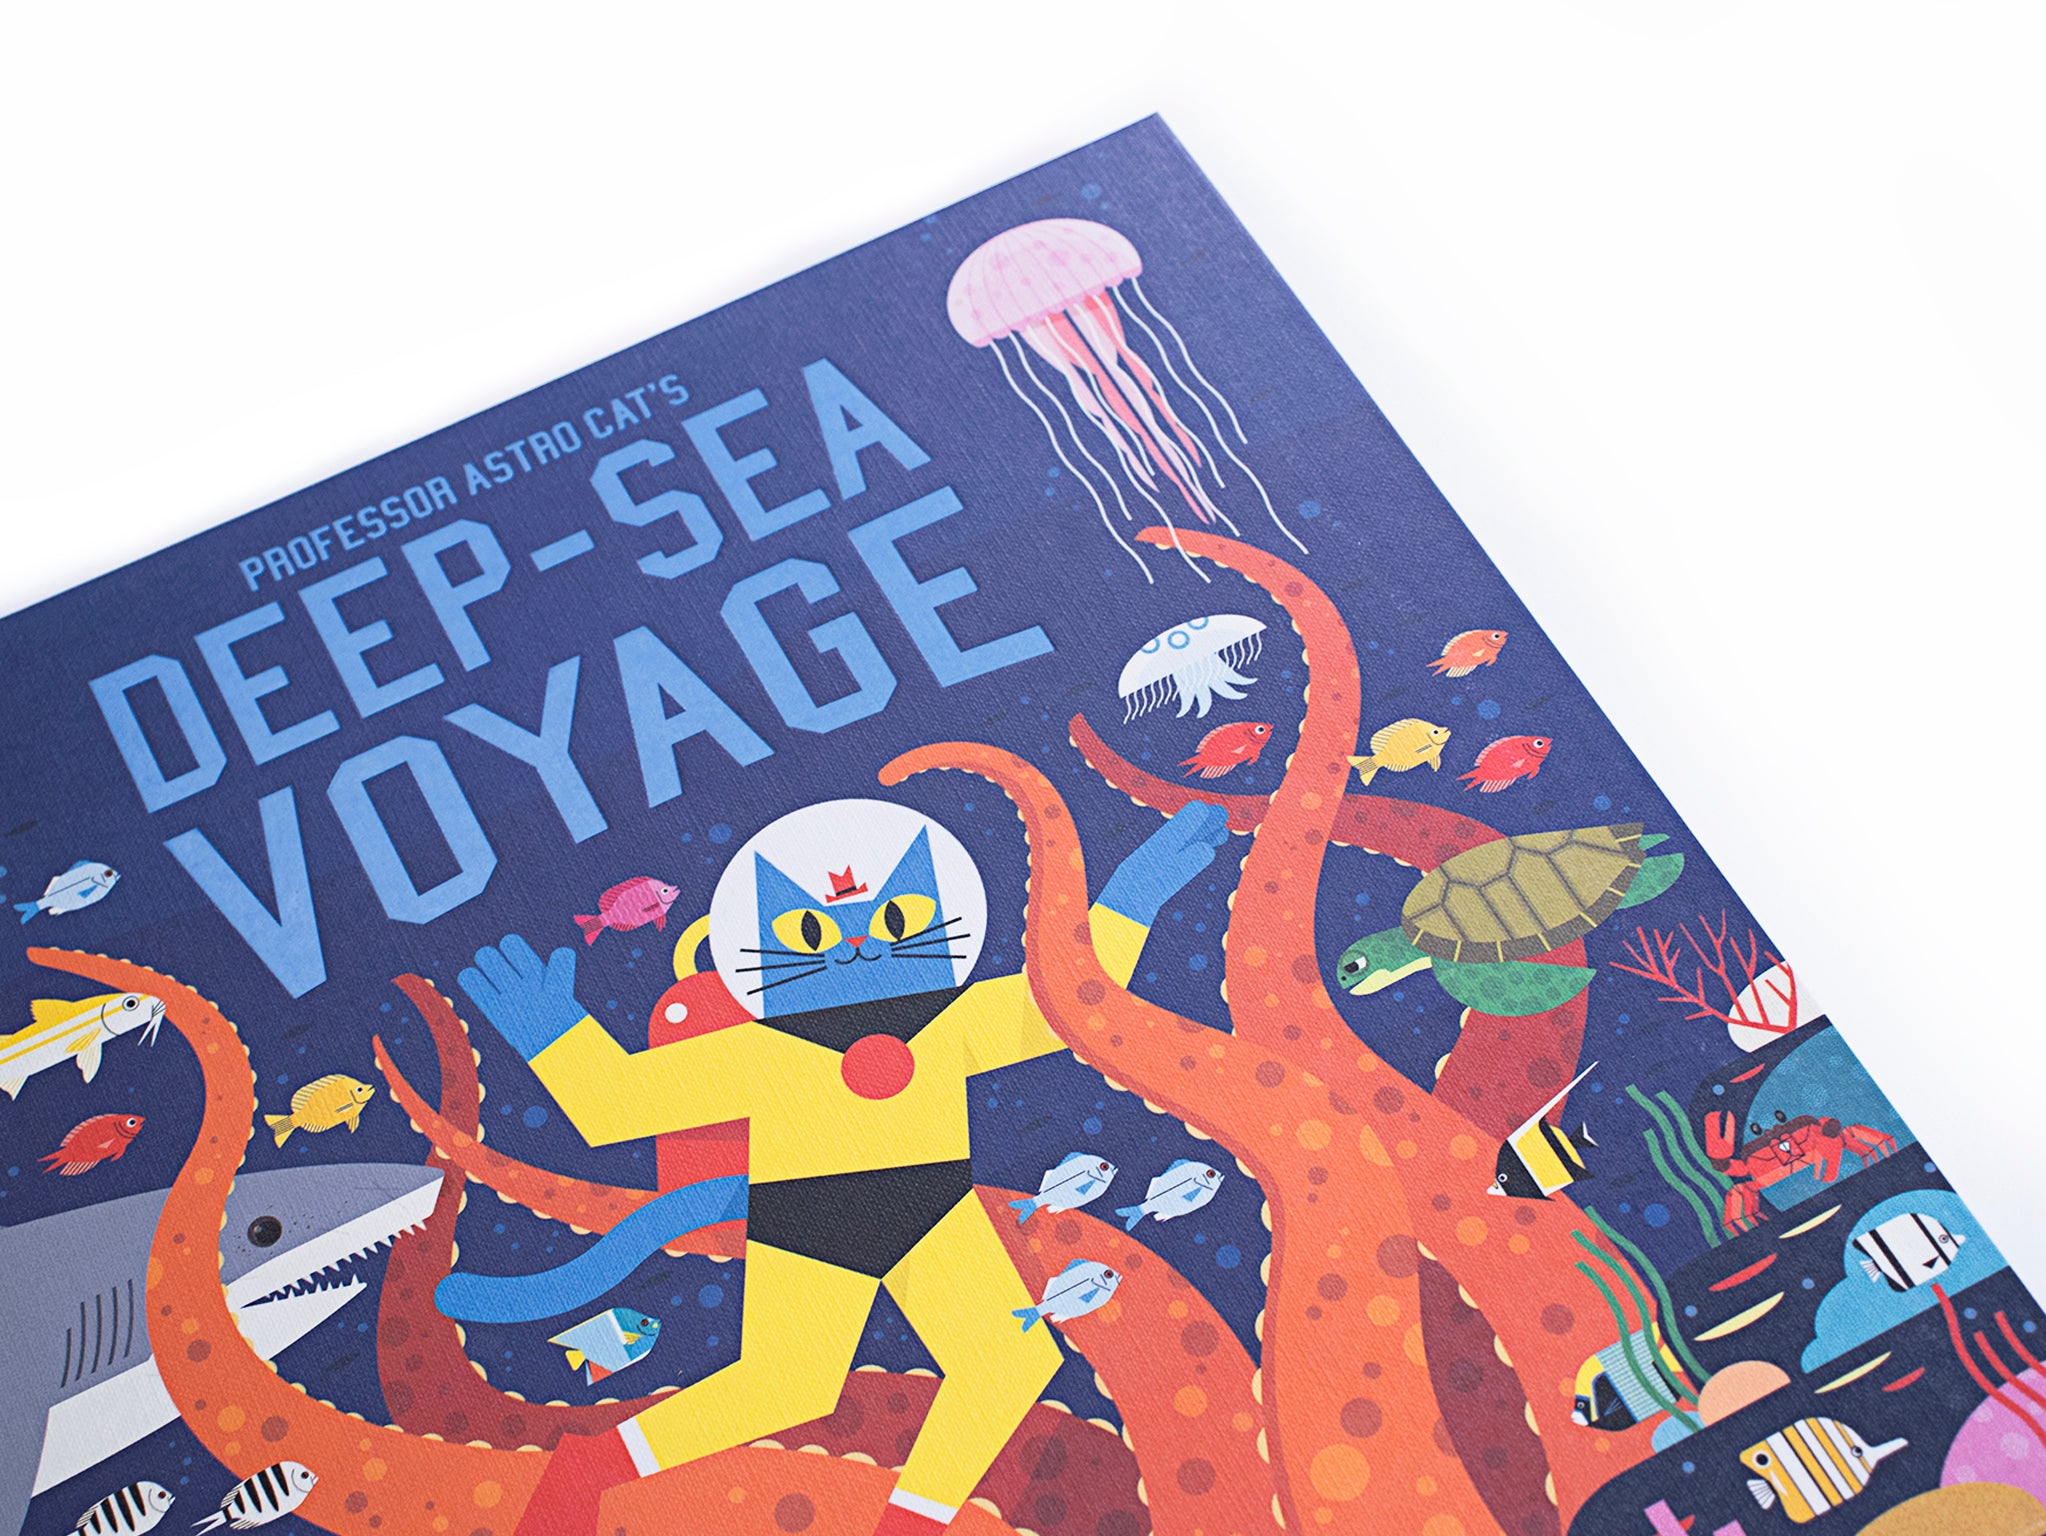 Professor Astro Cat’s Deep-Sea Voyage